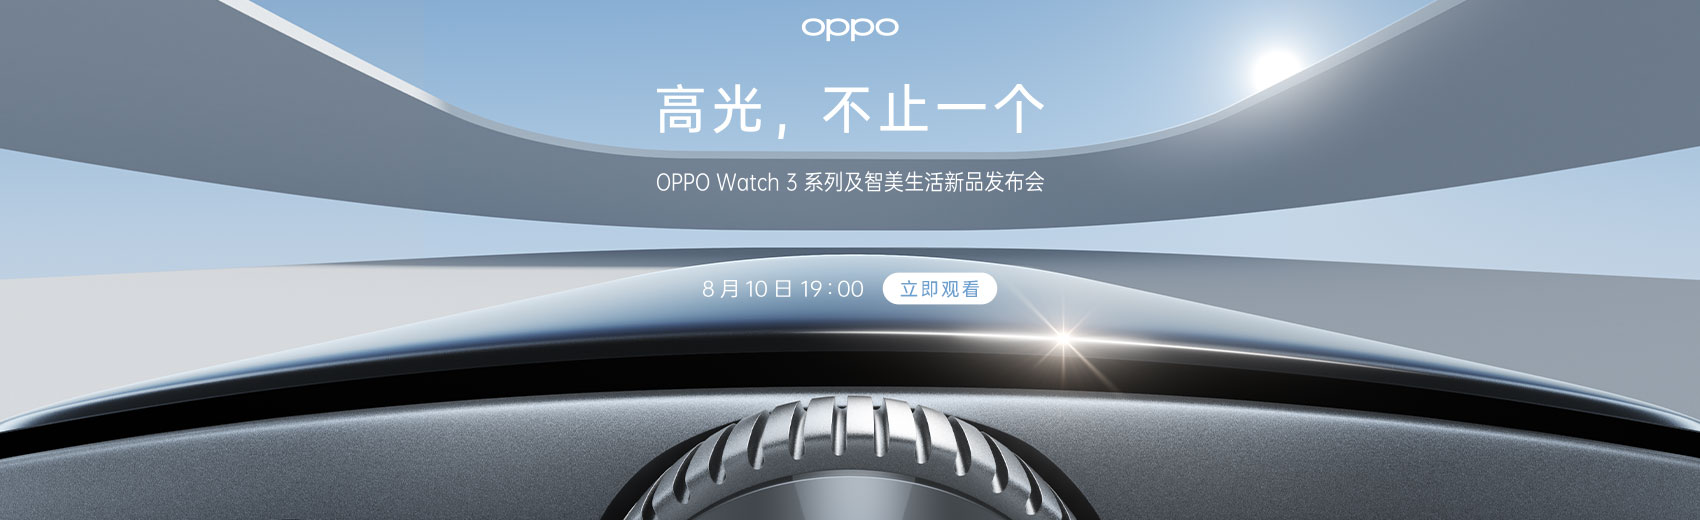 OPPO Watch 3系列新品发布会